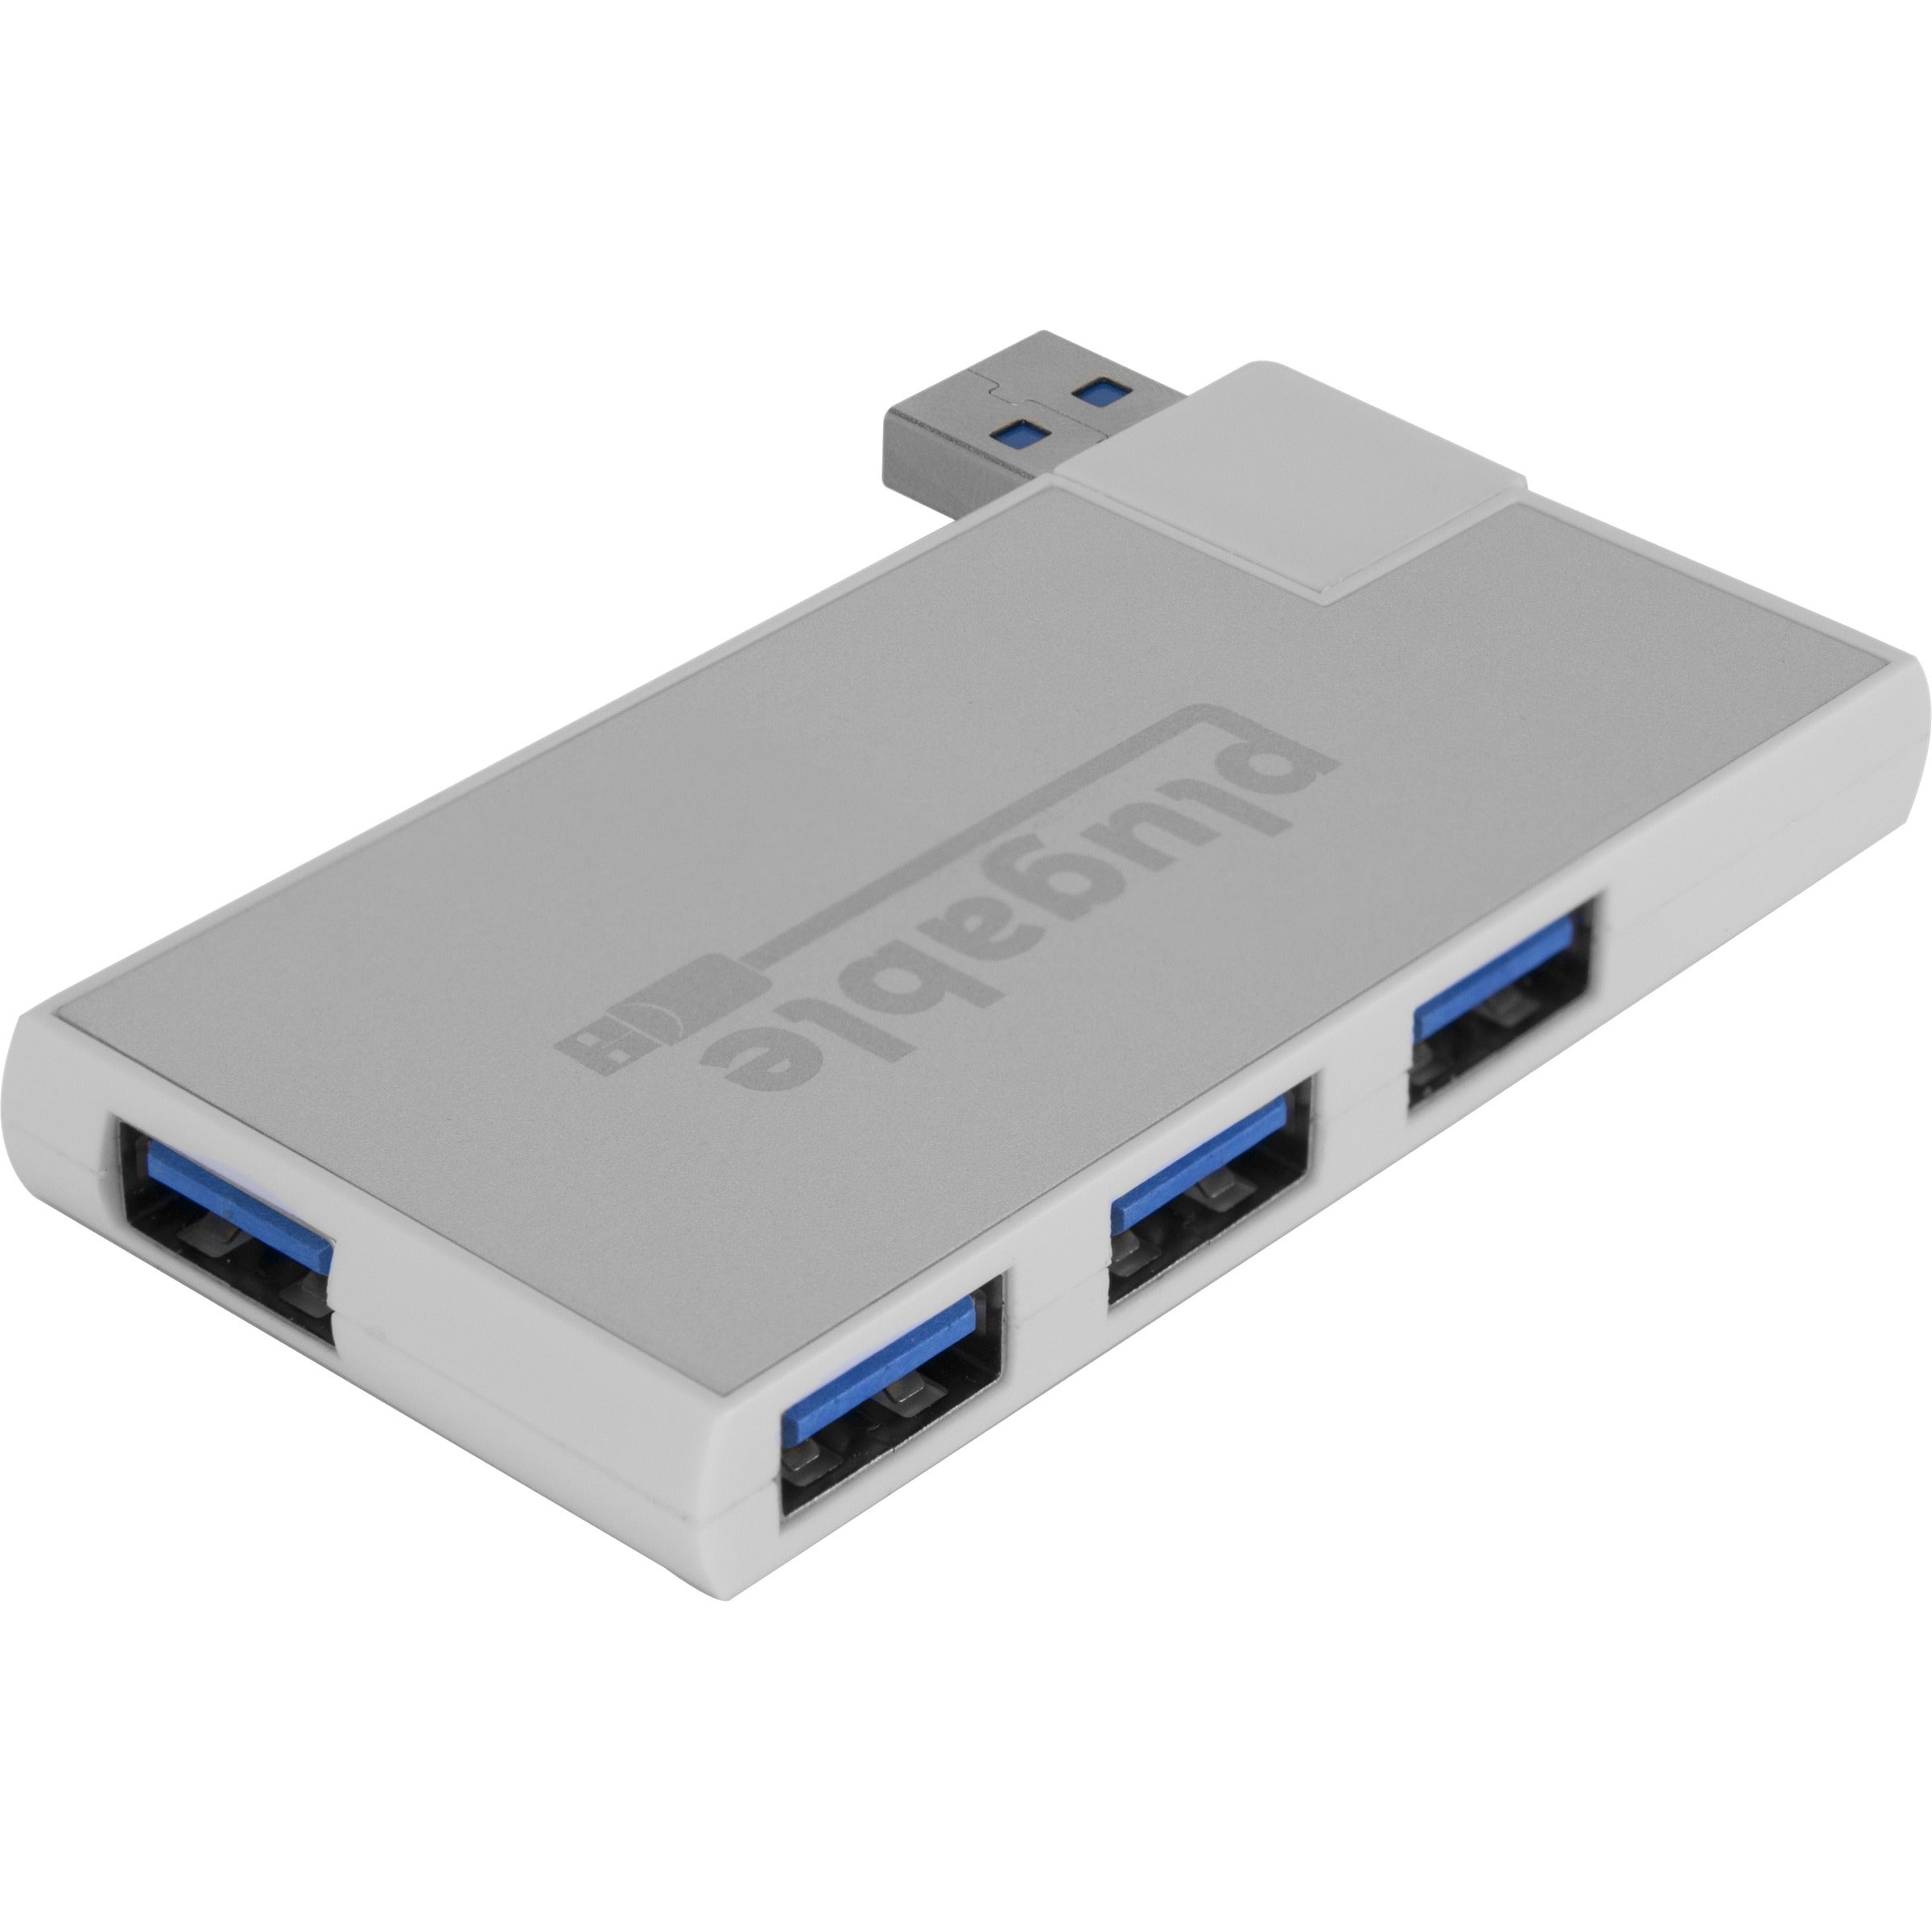 StarTech.com 4 Port PCI Express (PCIe) SuperSpeed USB 3.0 Card Adapter –  Natix